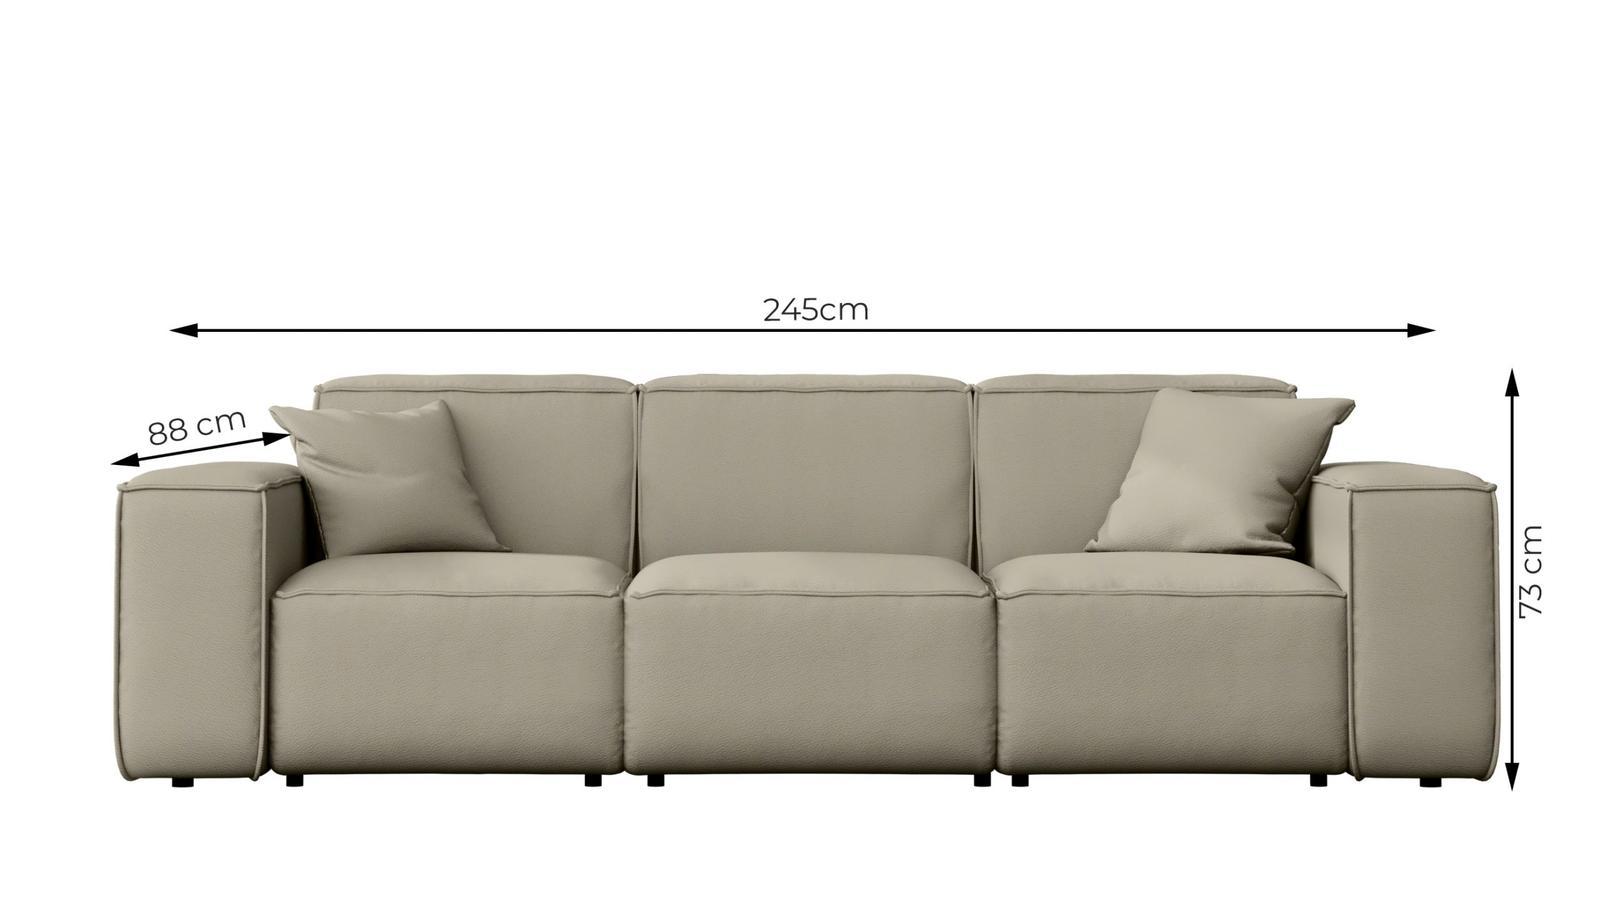 Sofa ogrodowa MALIBU 245x103x88 cm wodoodporna UV 3-os + 2 poduszki do ogrodu kremowa nr. 3